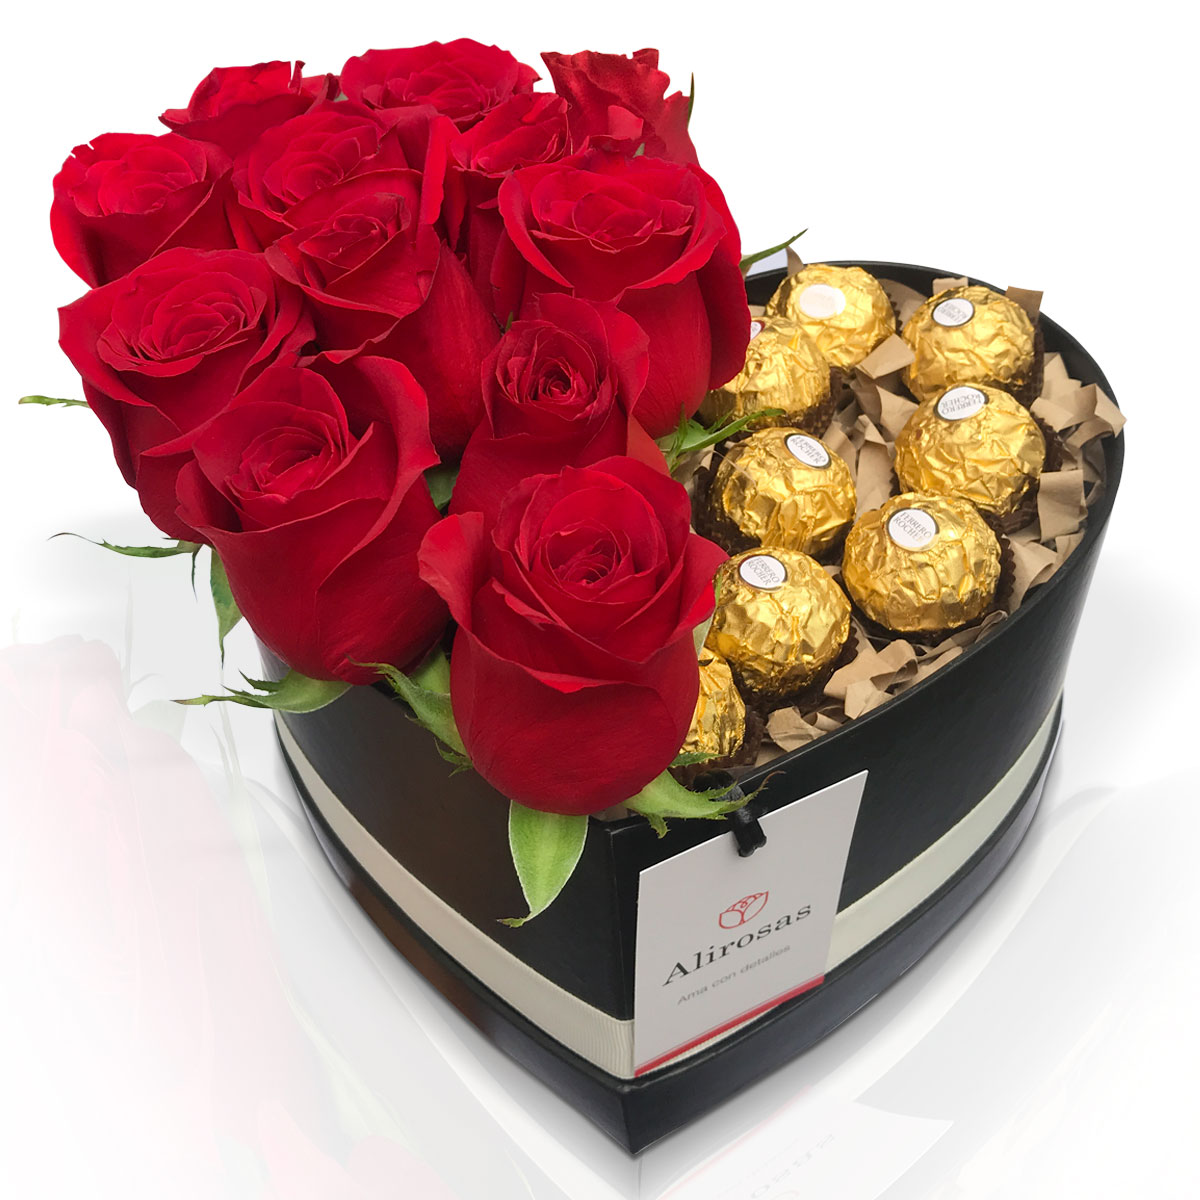 Opinión nombre de la marca anunciar Box de 12 rosas rojas con chocolates Ferrero Rocher: El mejor detalle